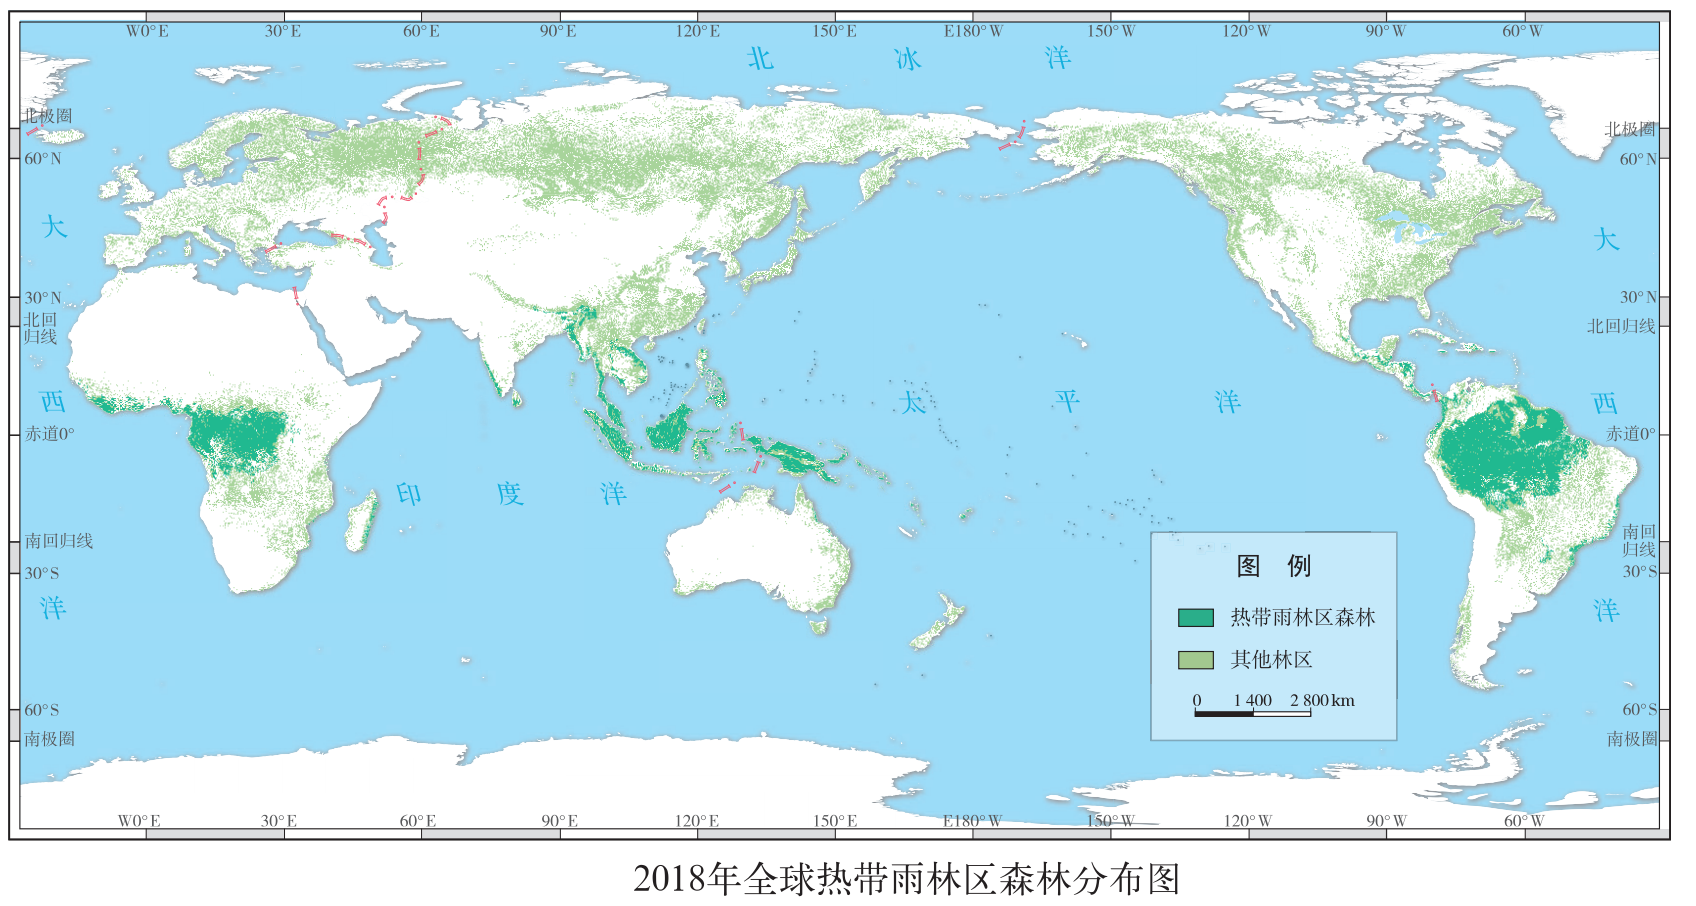 全球30米分辨率森林覆盖及变化数据分享